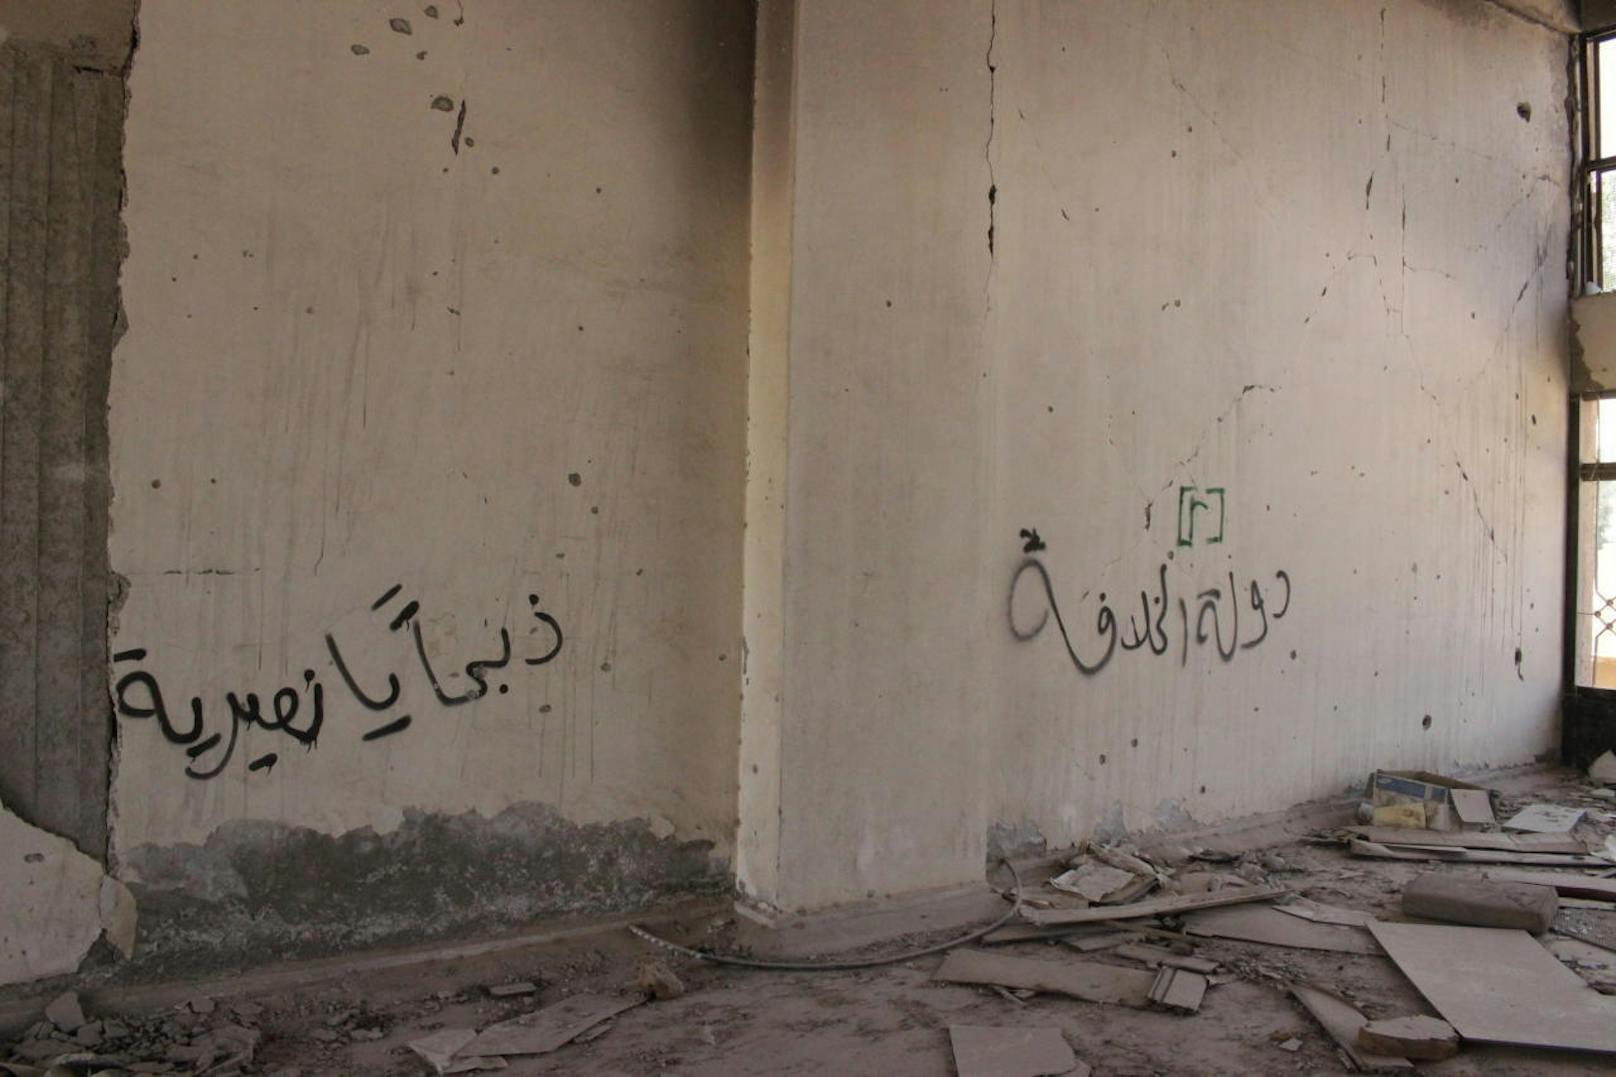 Graffitis in den Gängen des Stadions machen deutlich, wer hier wie regierte: "Der Staat des Kalifats" (rechts), "Wir kommen, um euch Alawiten zu köpfen" (links).